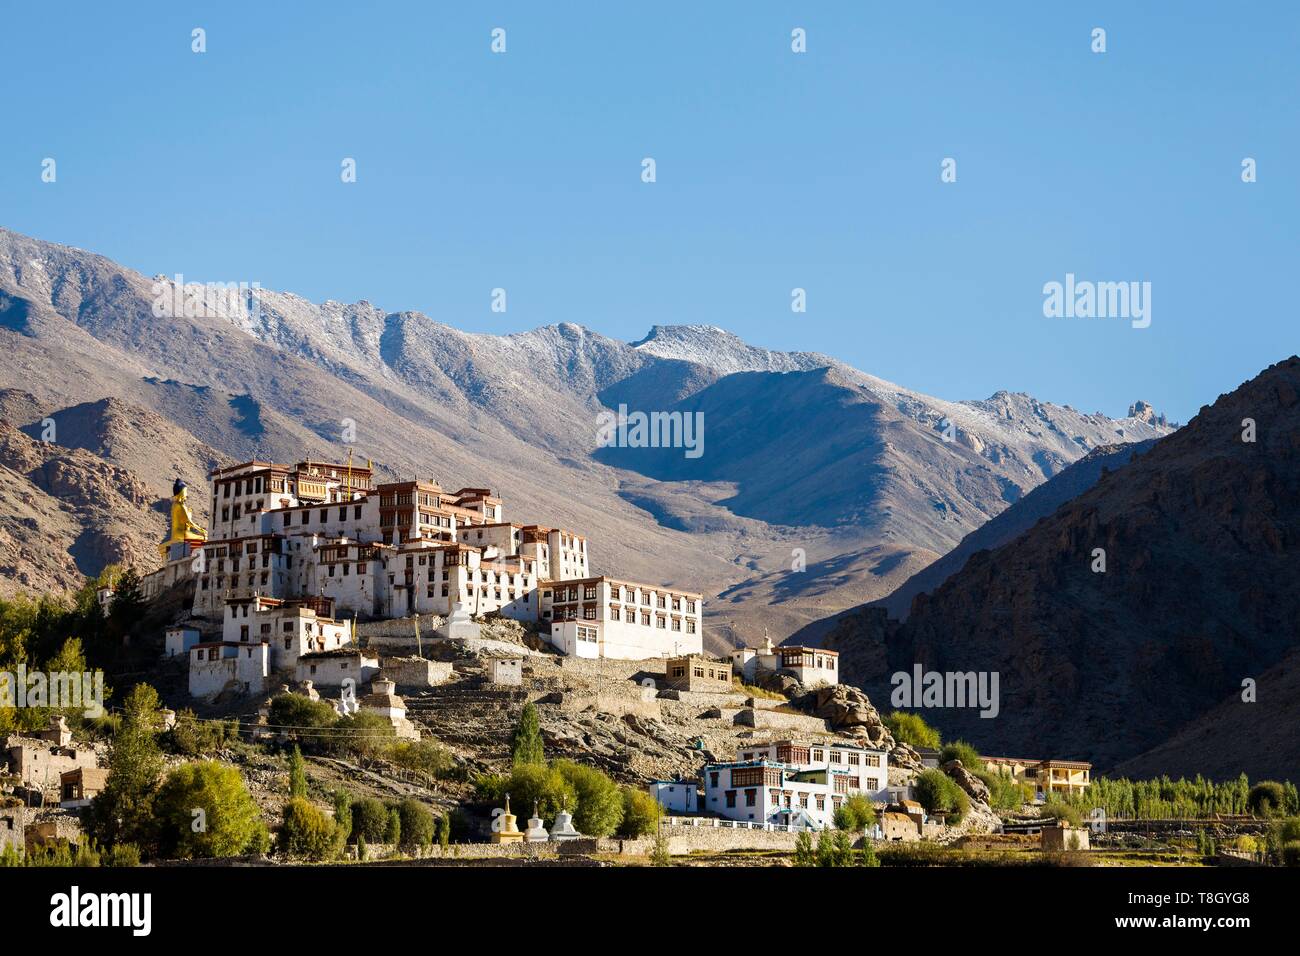 L'Inde, l'état de Jammu-et-Cachemire, Ladakh, Himalaya, vallée de l'Indus, Likir gompa (monastère) de l'école Gelugpa Banque D'Images